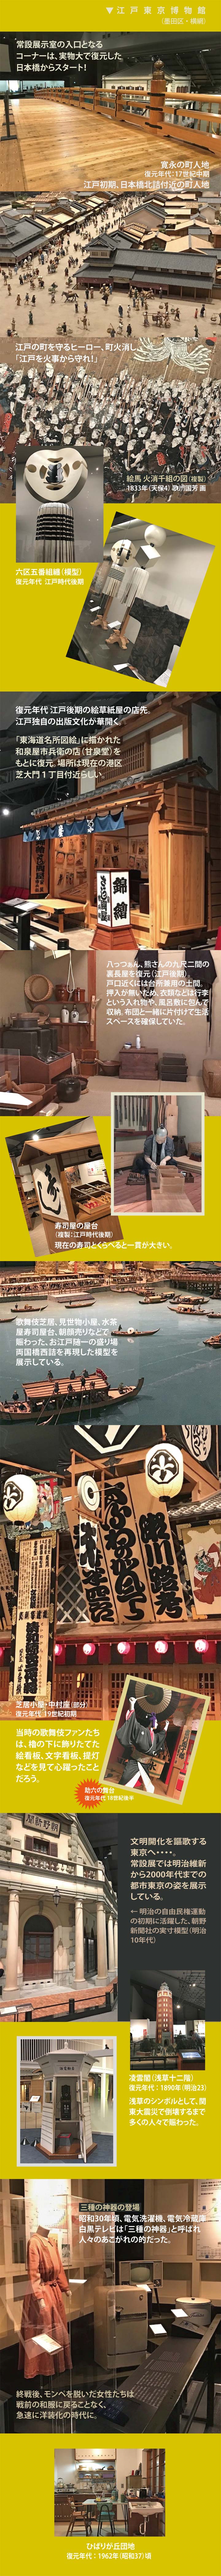 模型で江戸、東京の生活を再現した江戸東京博物館の展示室